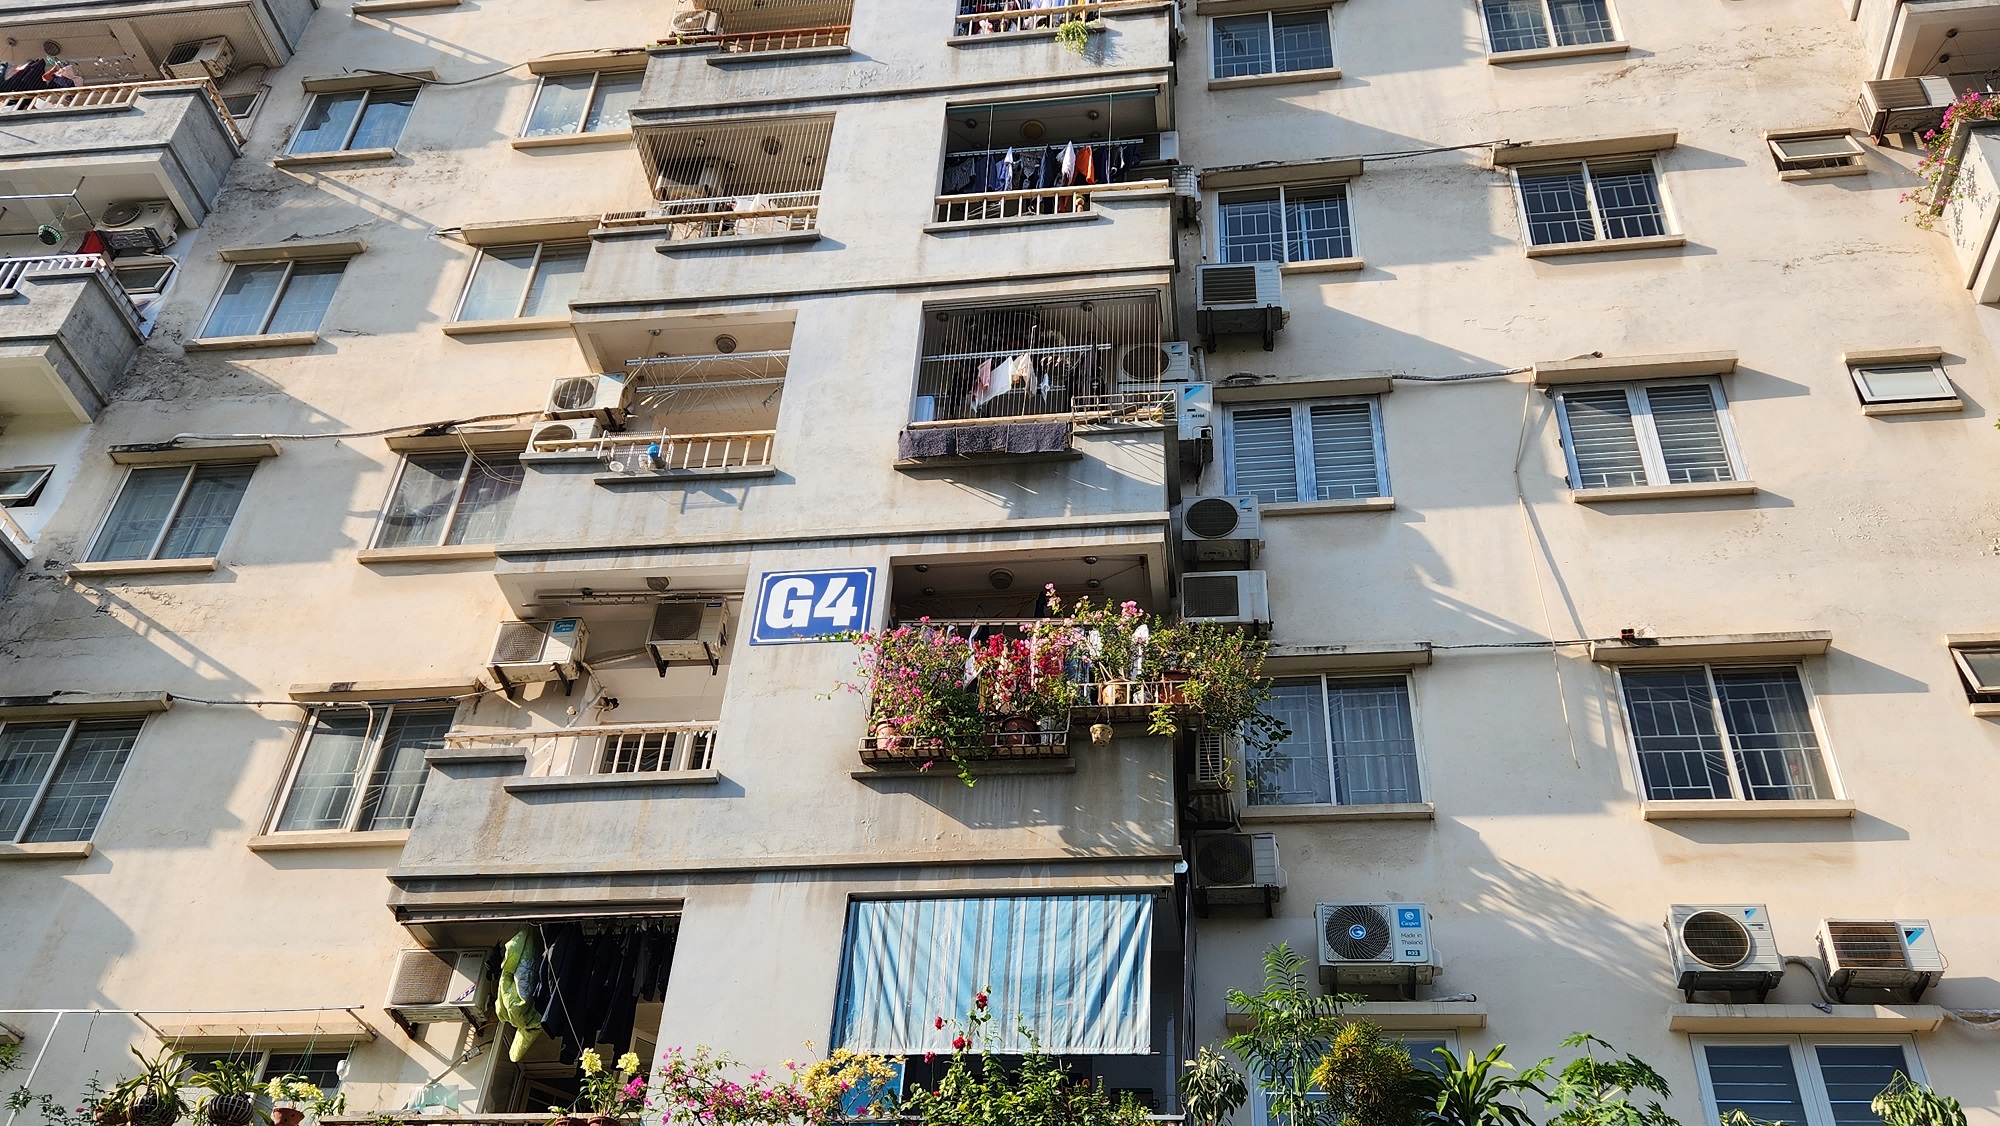 Cận cảnh chung cư nâng tầng chưa được chấp thuận khiến cư dân 15 năm không được cấp sổ hồng - Ảnh 5.